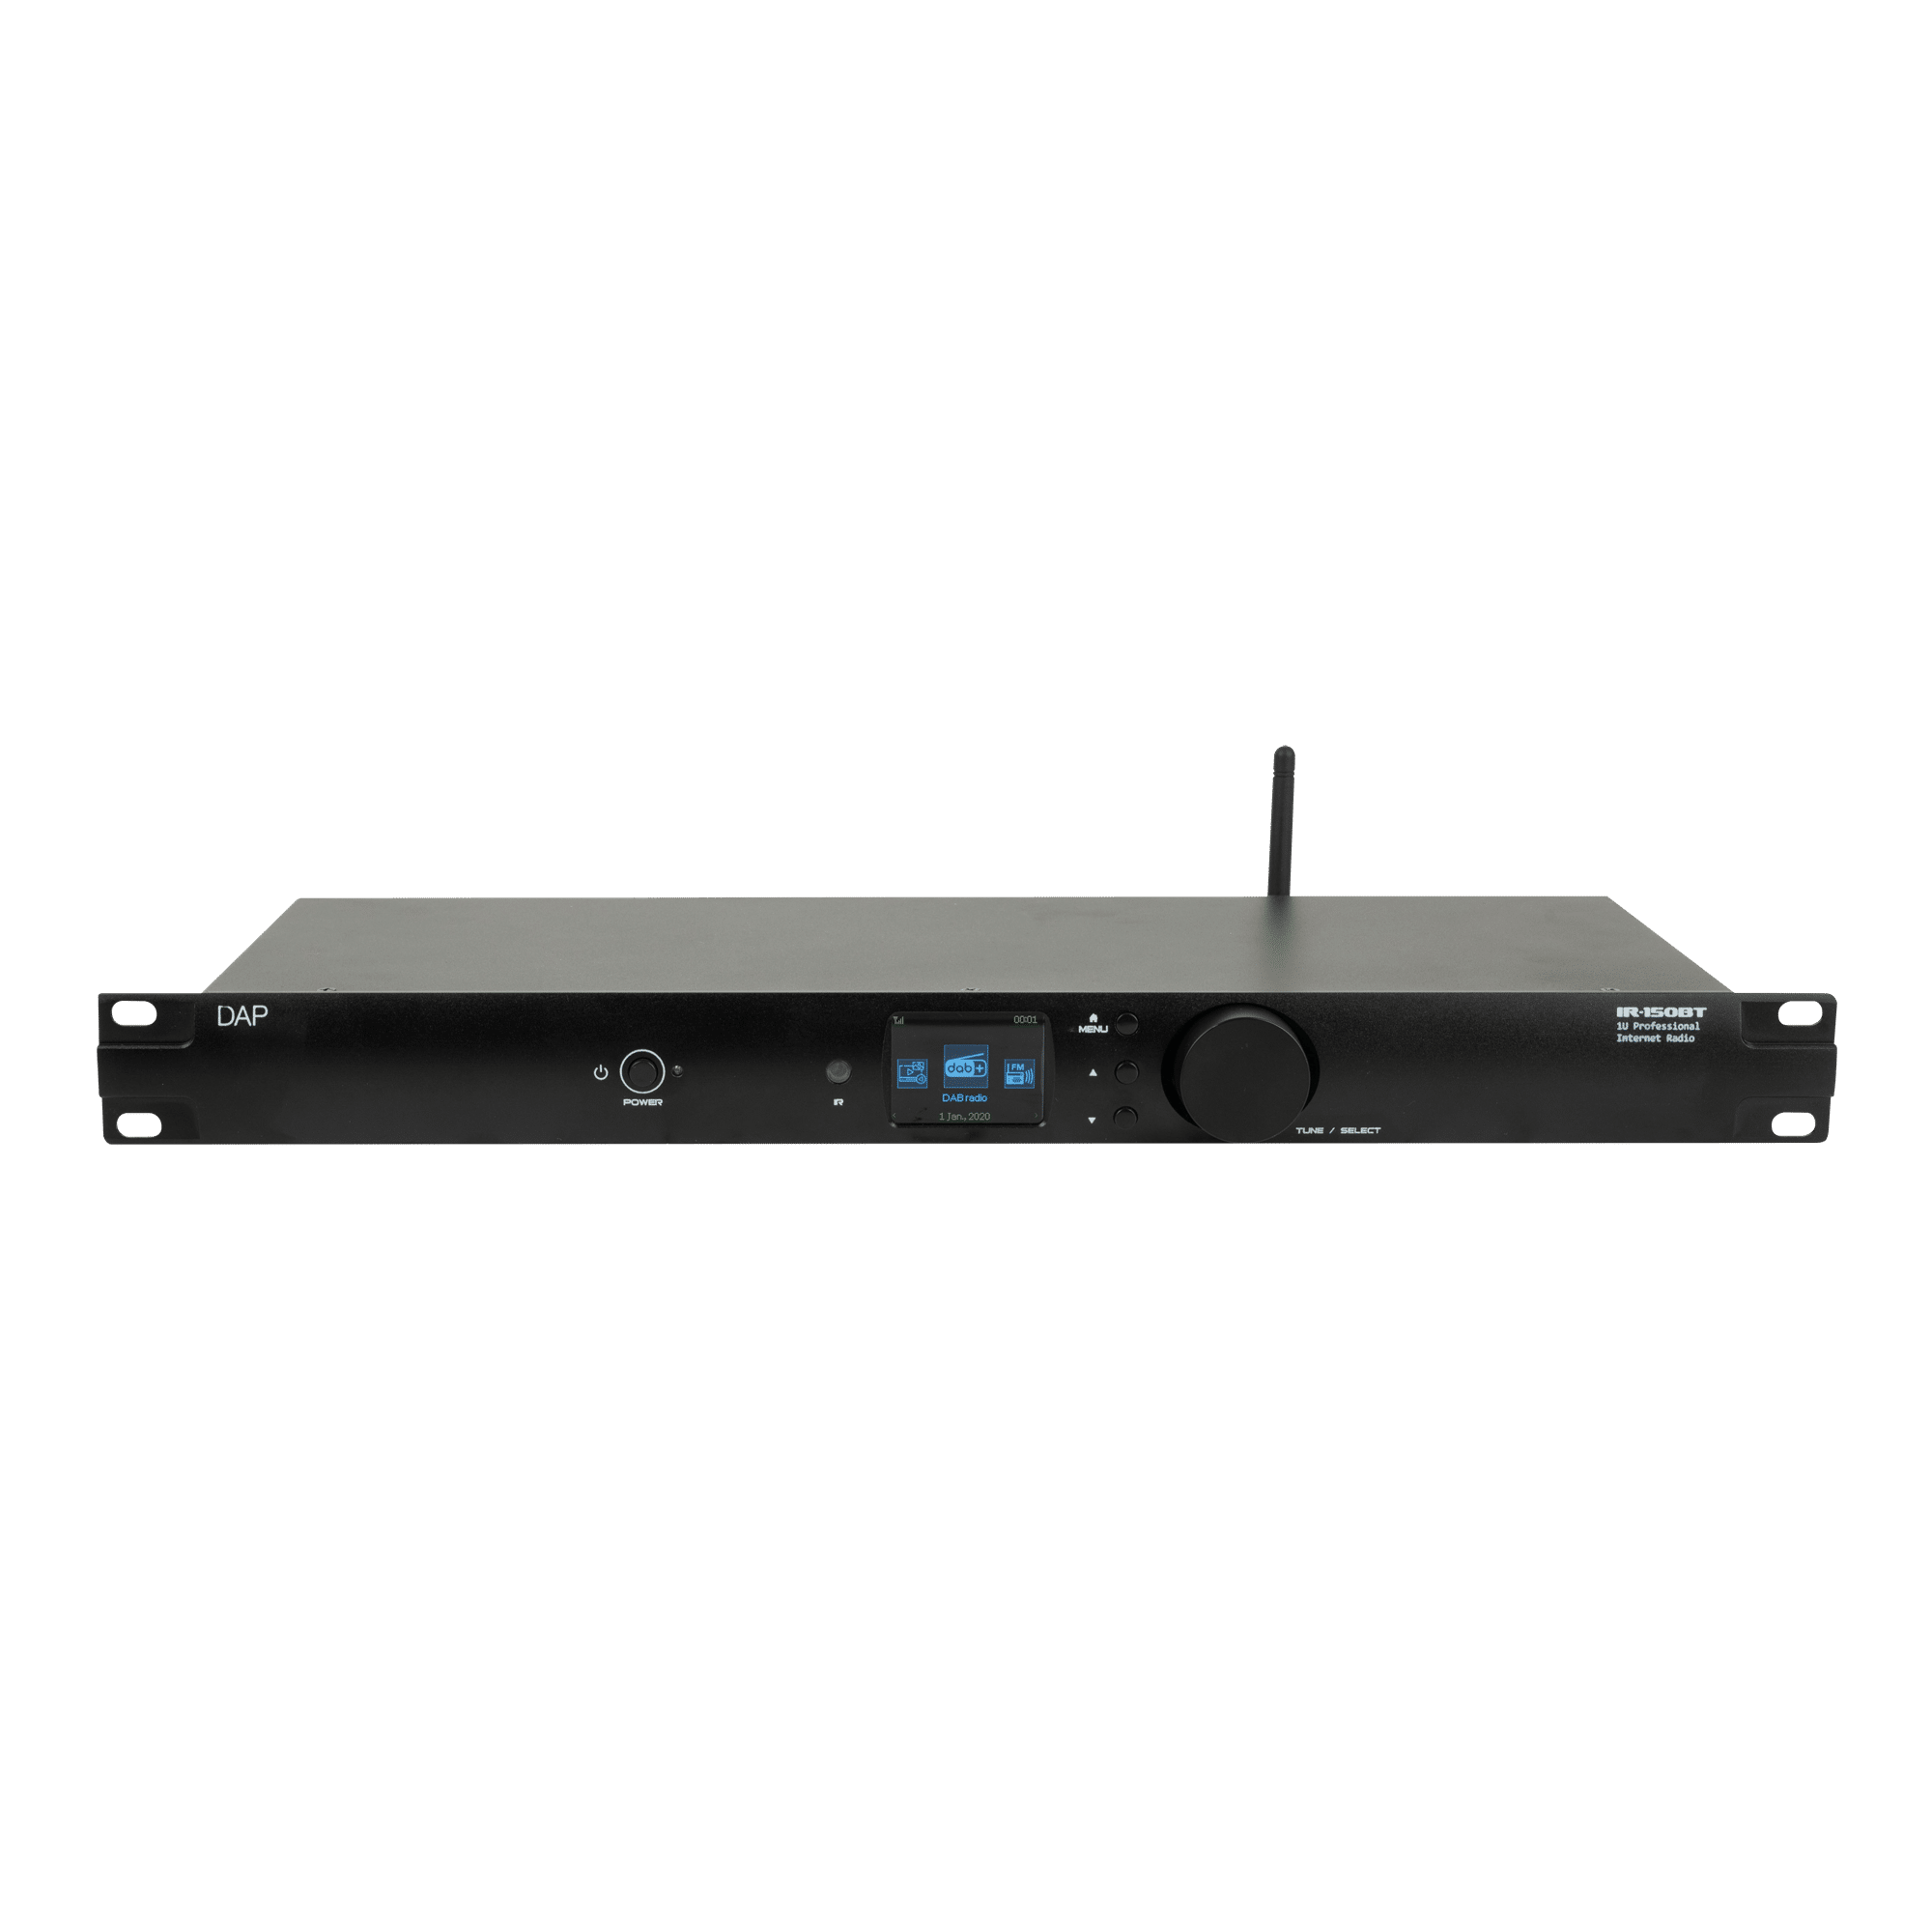 IR-150BT Media Player - Onlinediscowinkel.nl